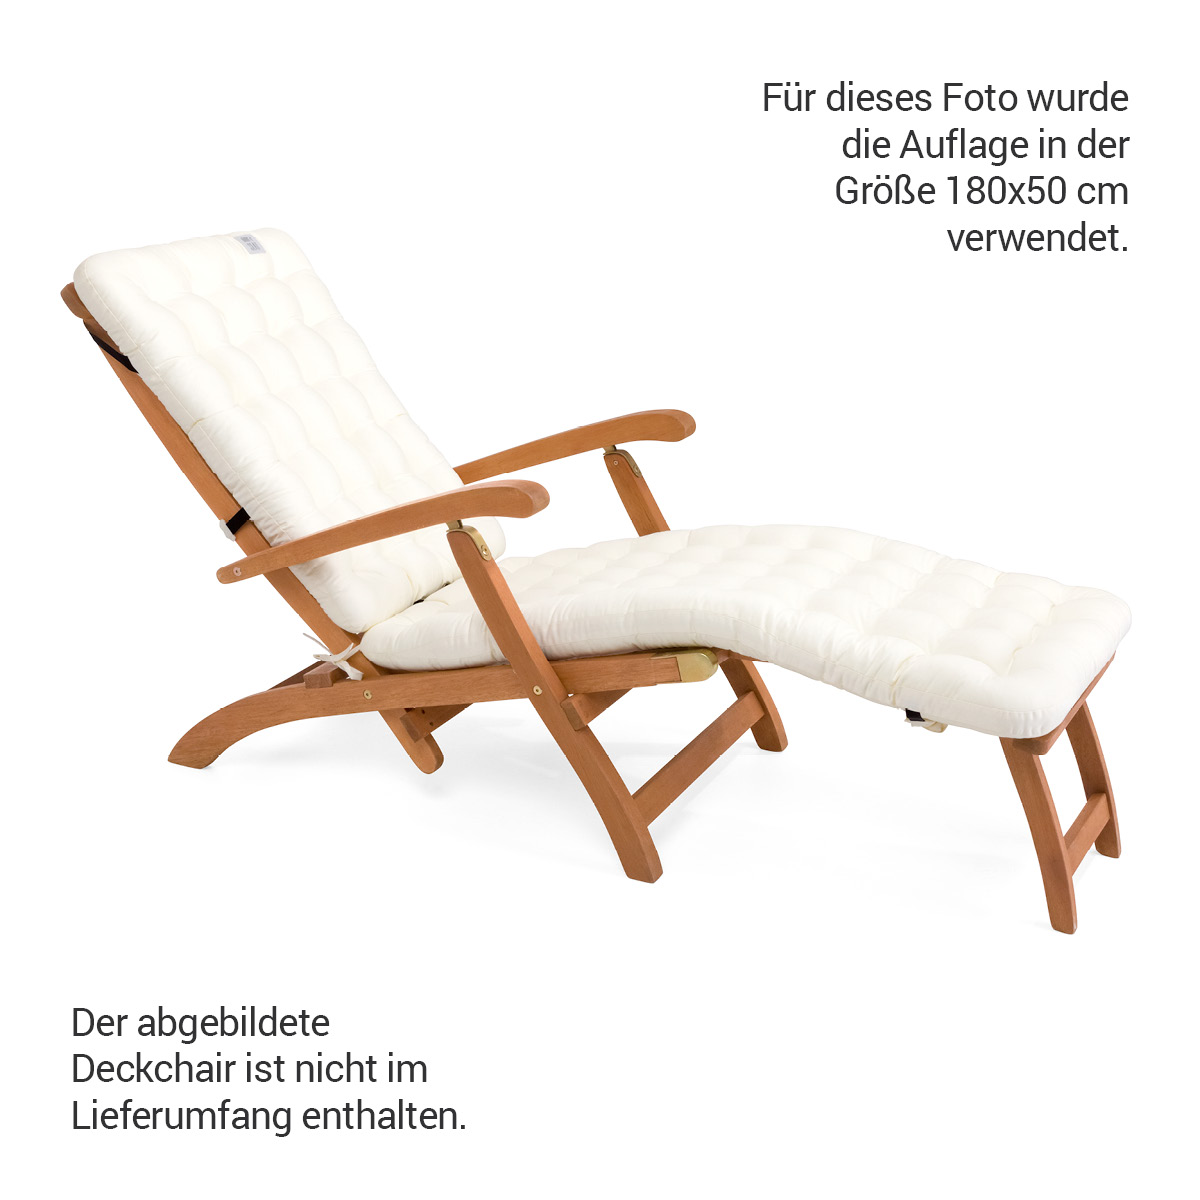 Premium HAVE A SEAT Living Auflage in edlem Weiß für Deckchair mit Luxus-Polsterung 8 cm Dick | bequem, orthopädisch, passend für Relaxstühle